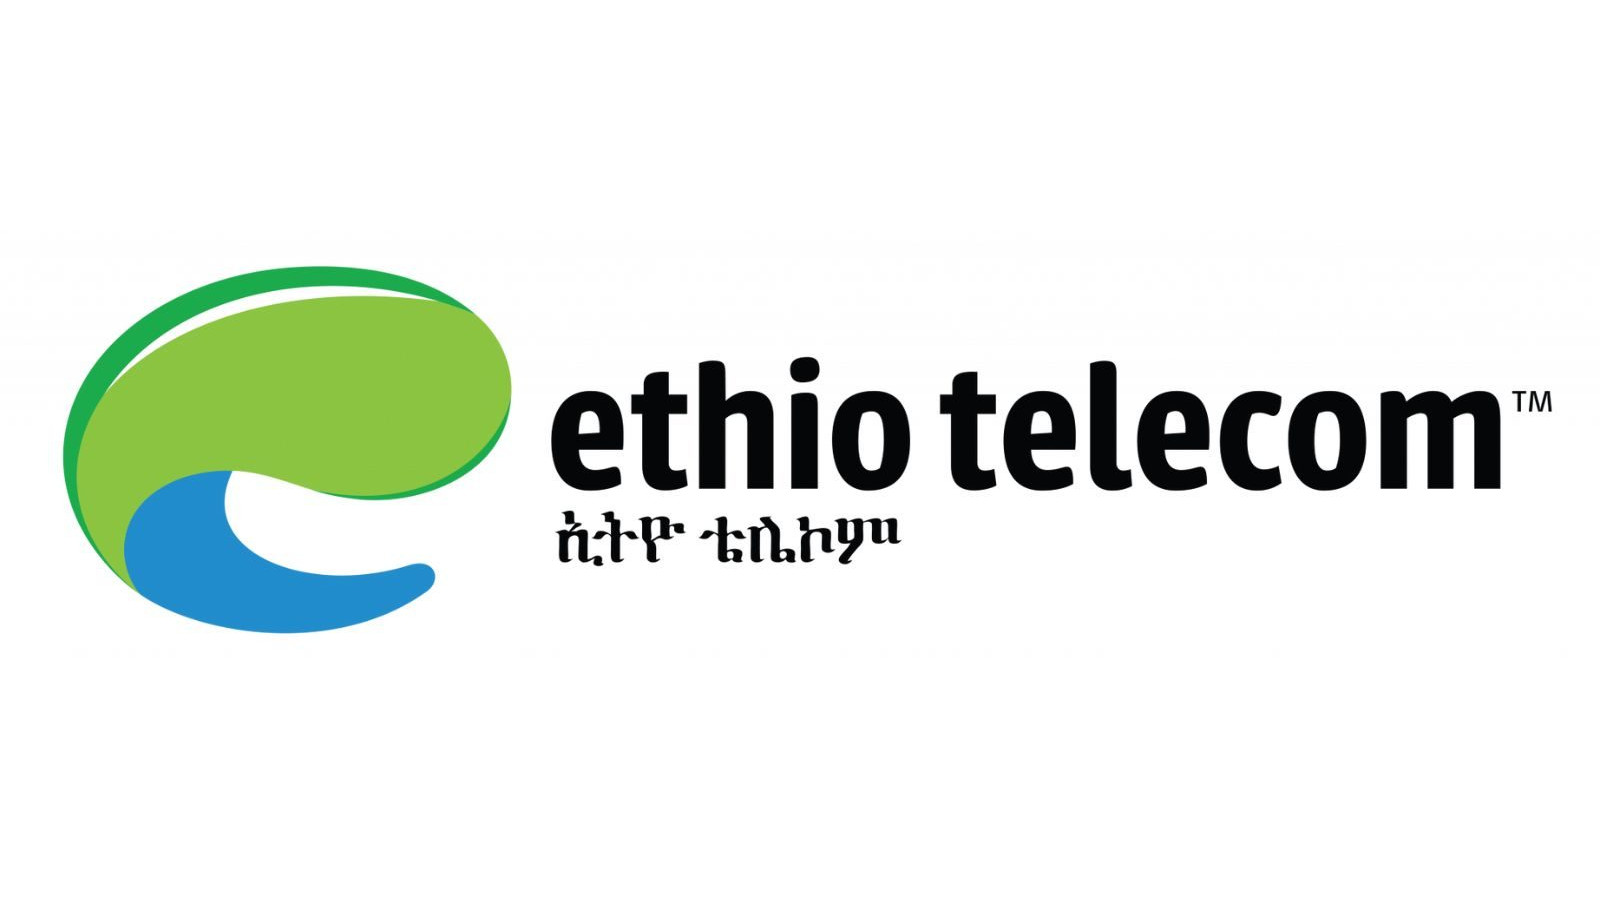 Ethiotelecom 1000 ETB Mobile Top-up ET, 18.76 usd